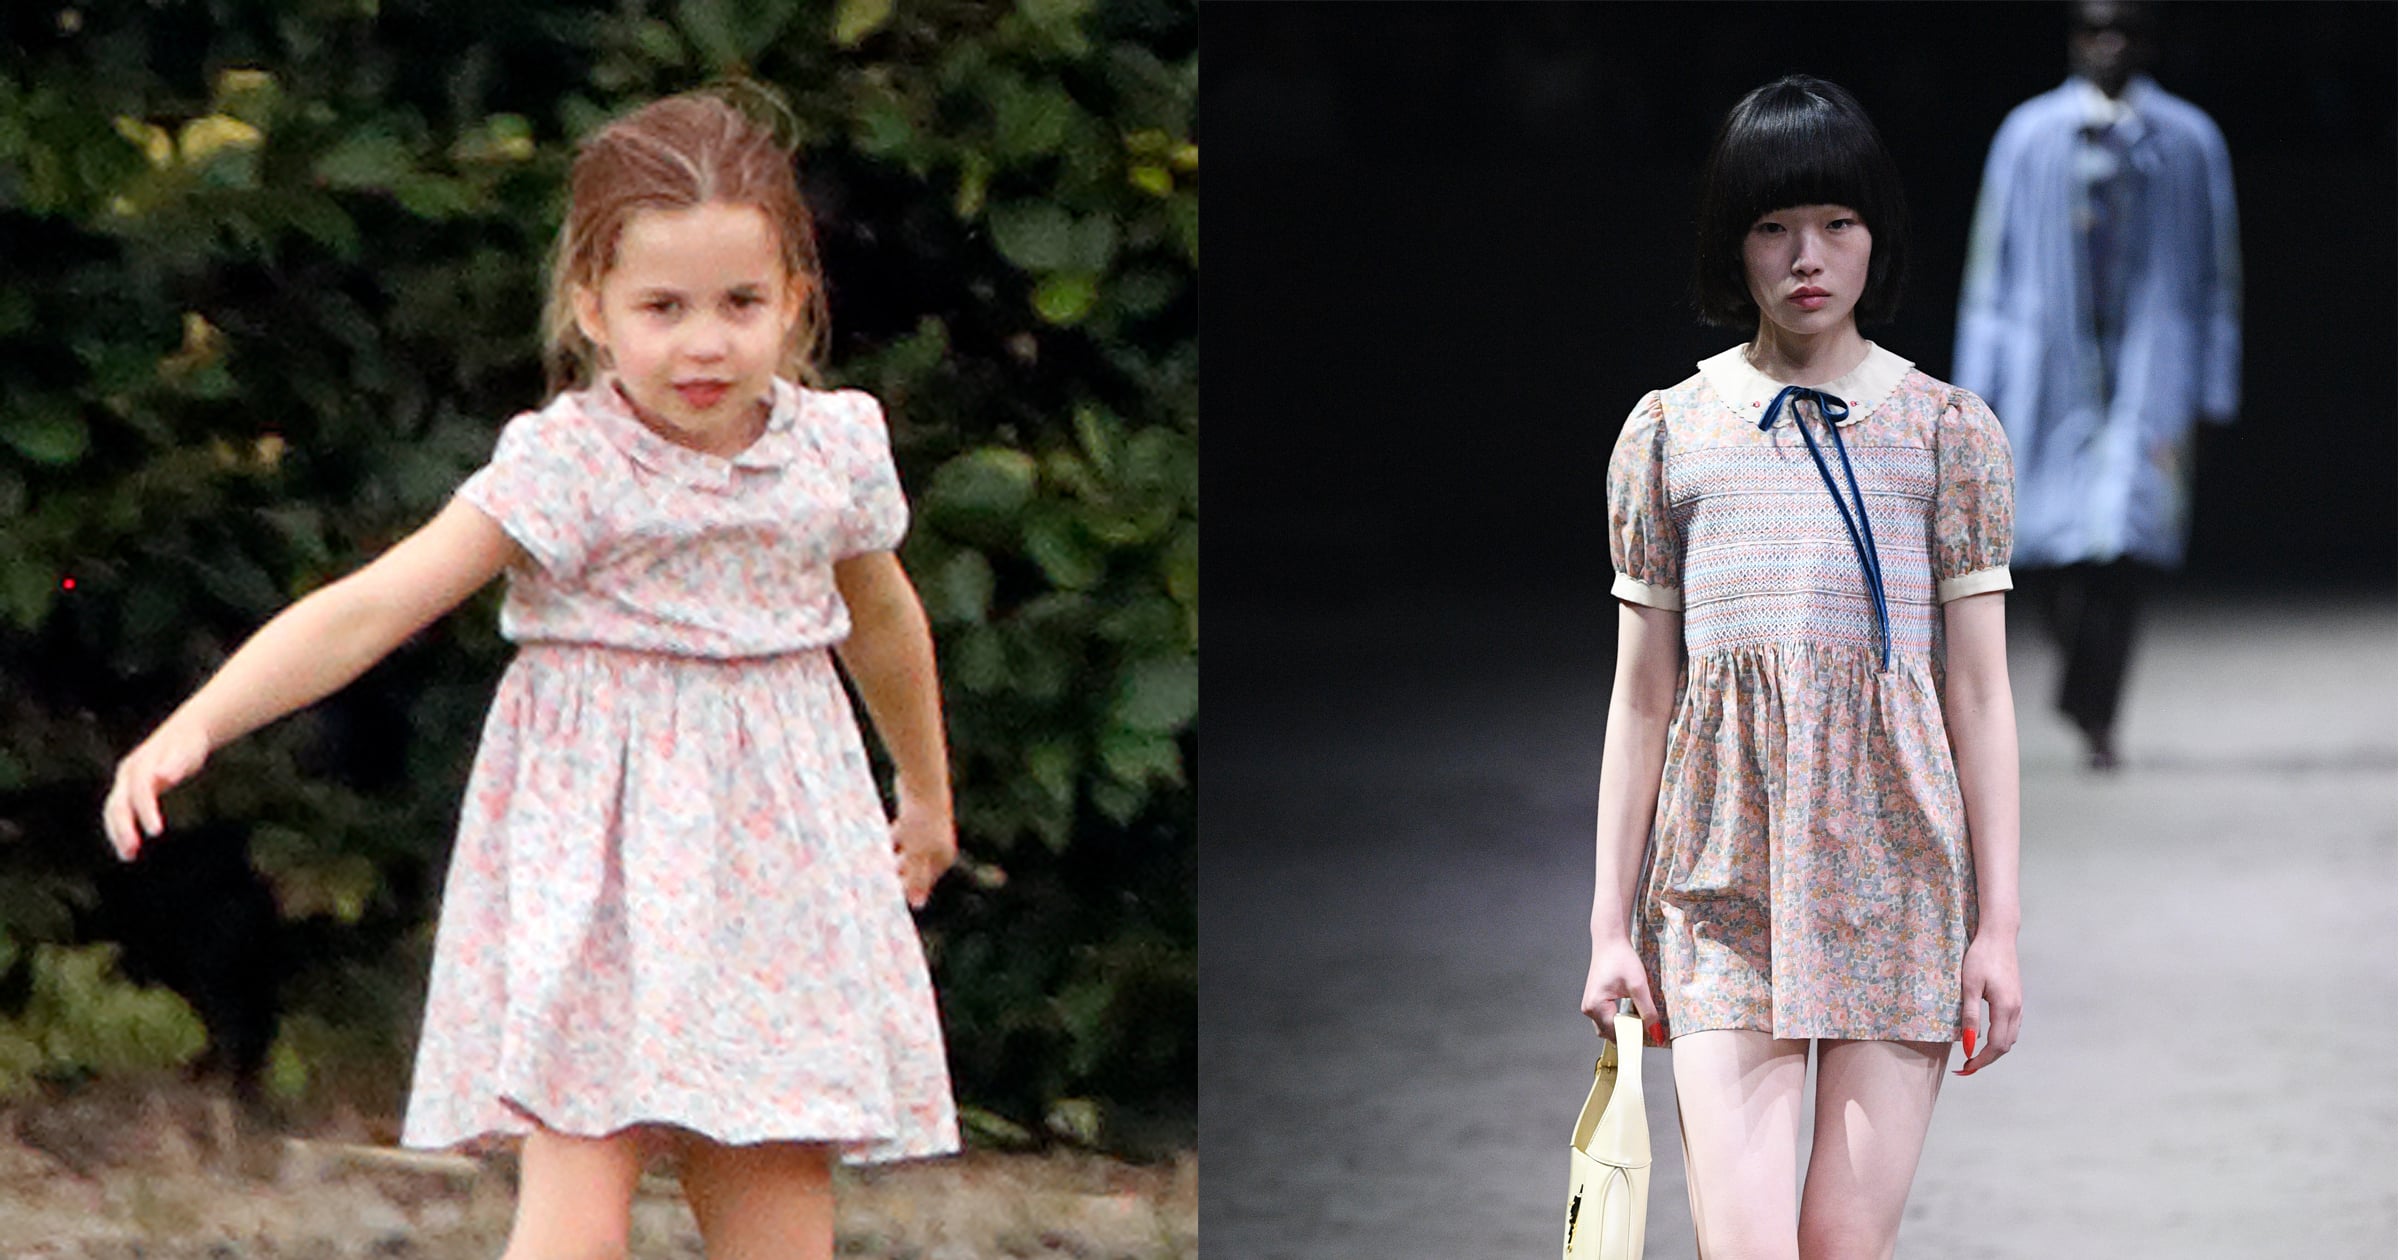 Did Princess Charlotte Inspire Gucci's Collection? | POPSUGAR Fashion